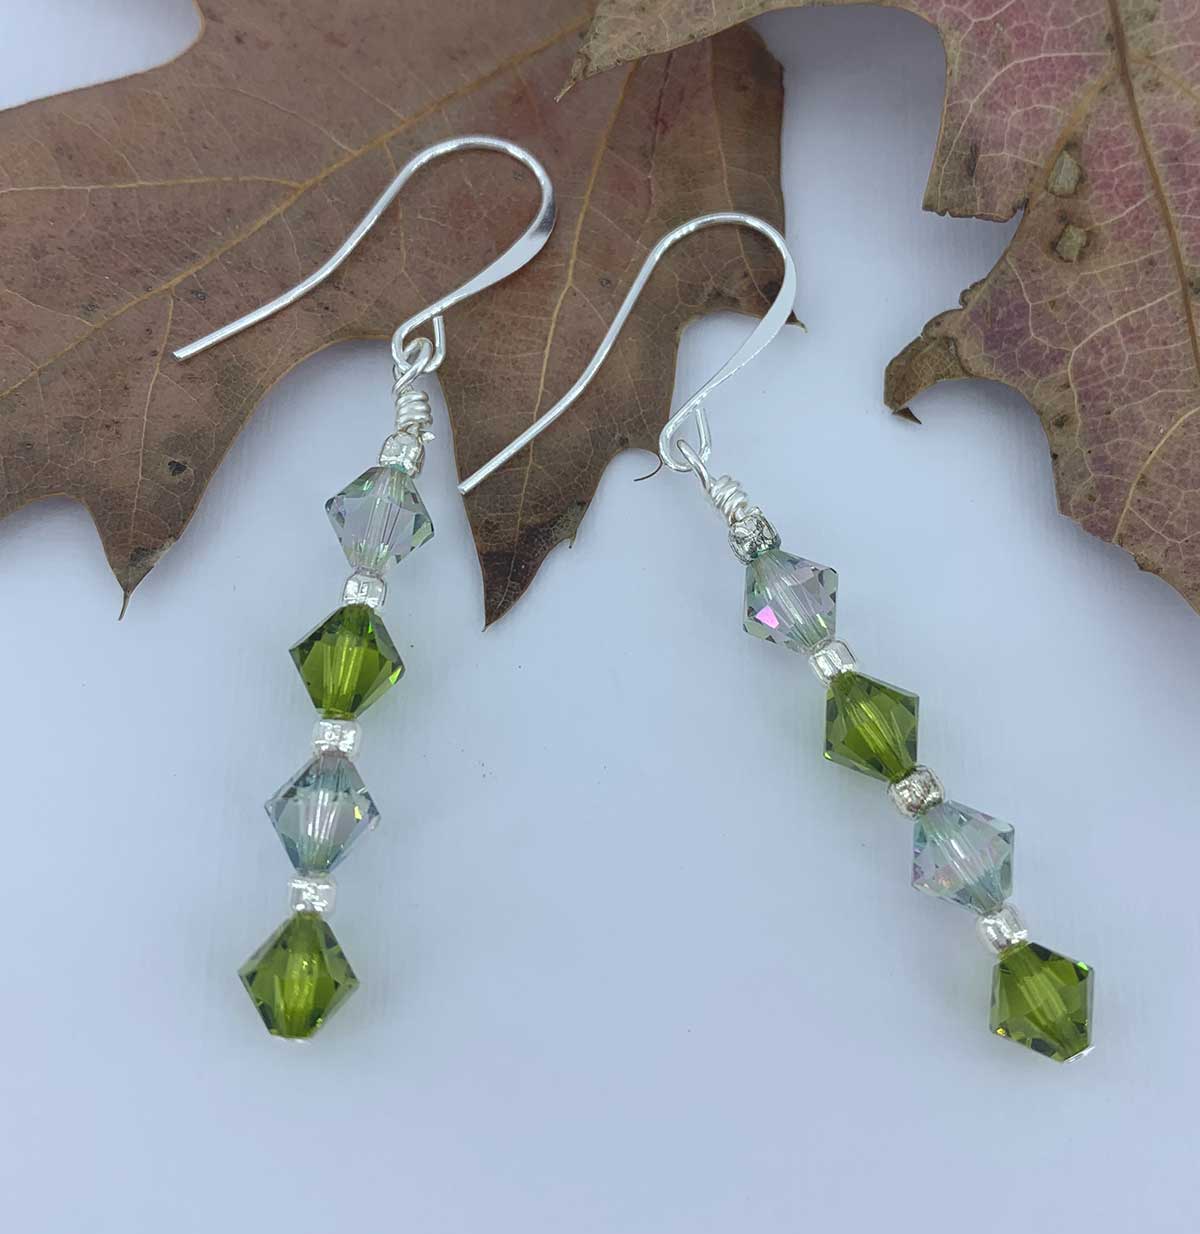 green crystal drop silver earrings